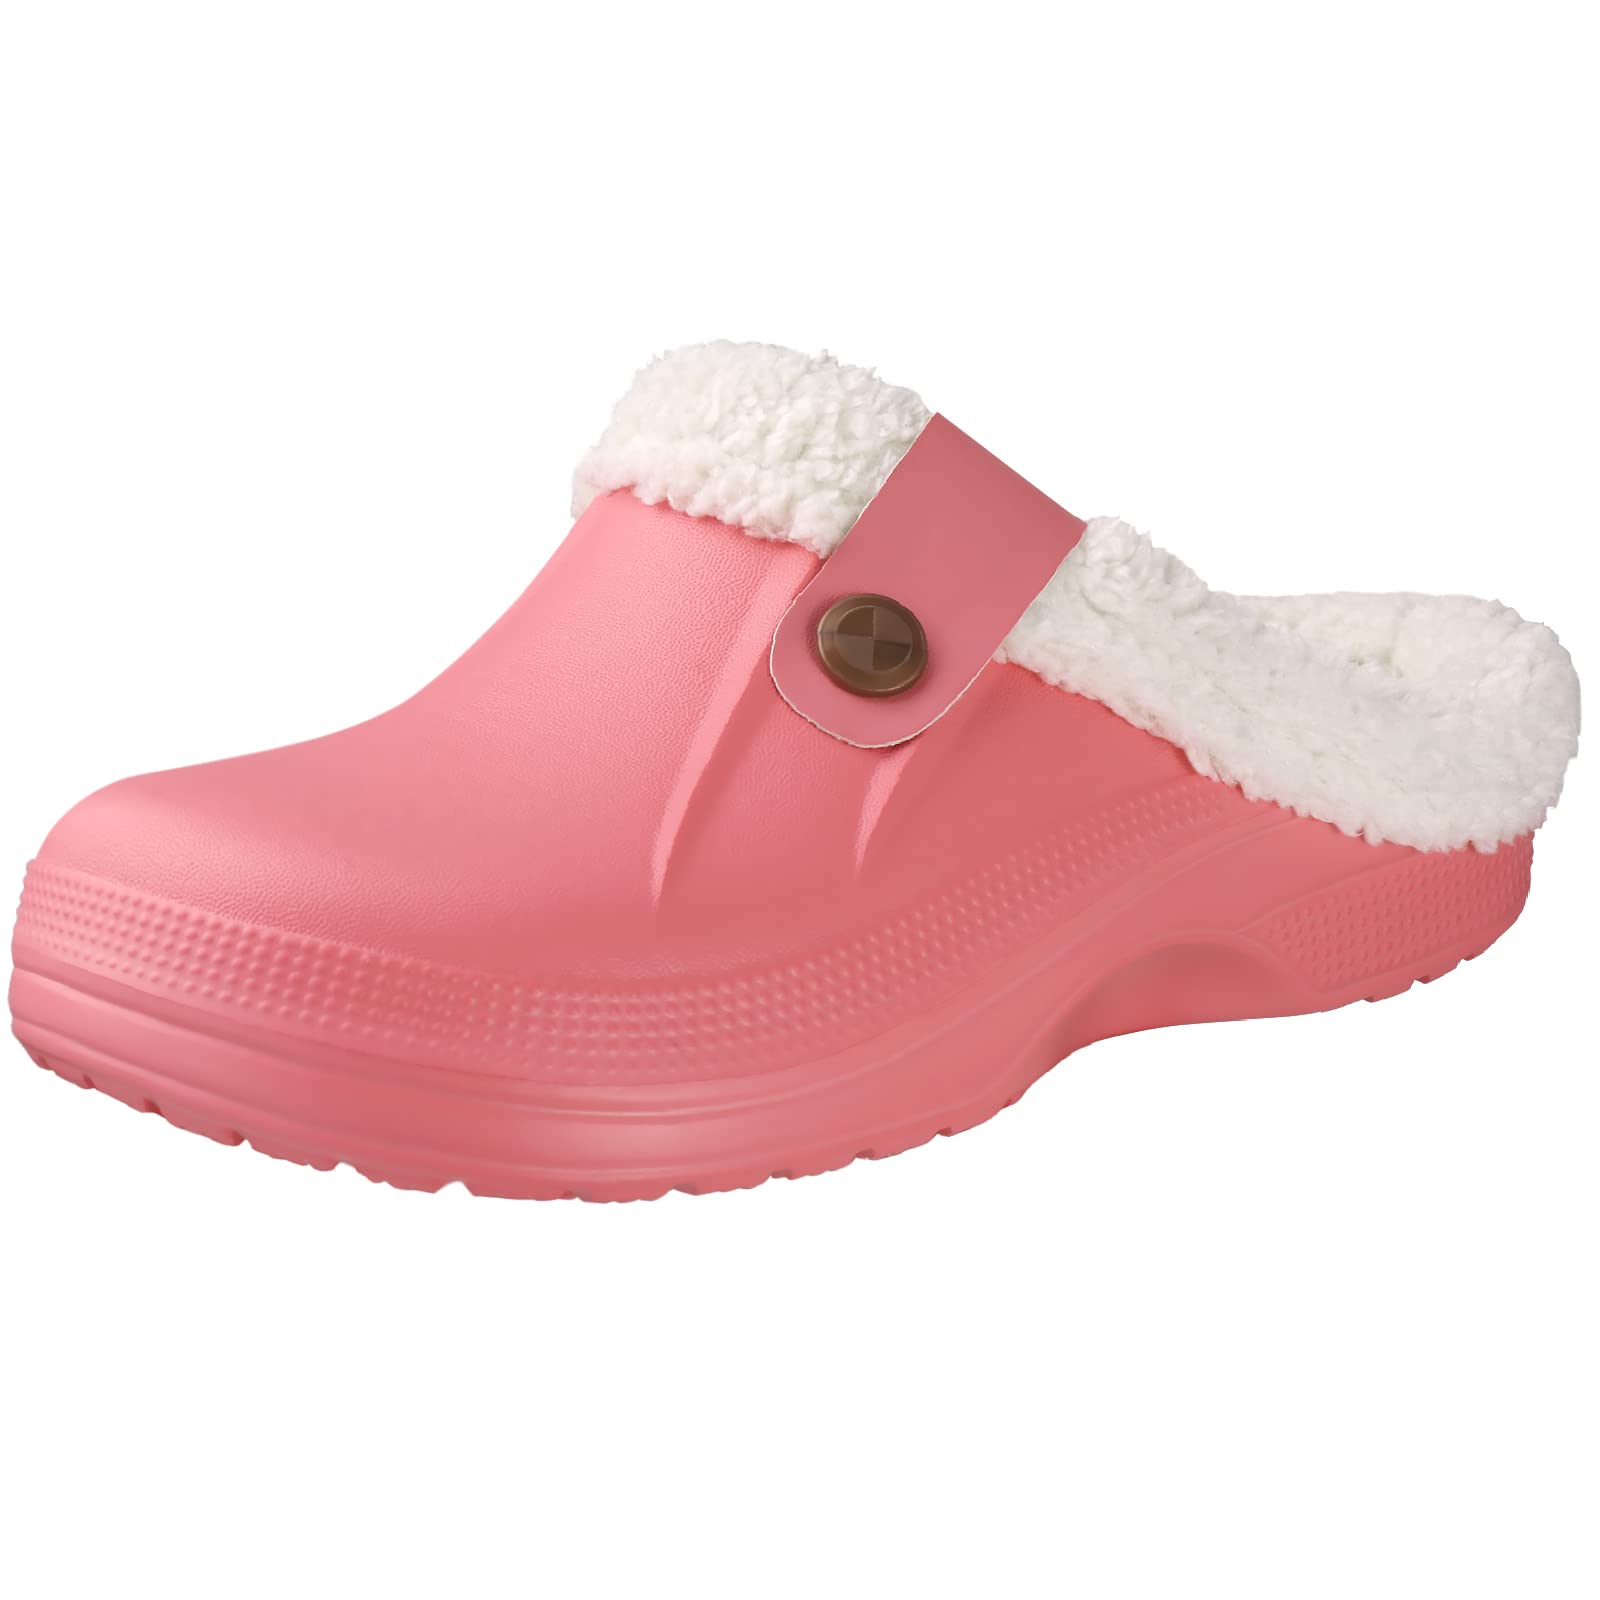 shevalues Fur Lined clogs for Women Men Winter Waterproof Outdoor Slippers garden Shoes, Pink Women Size 85-9